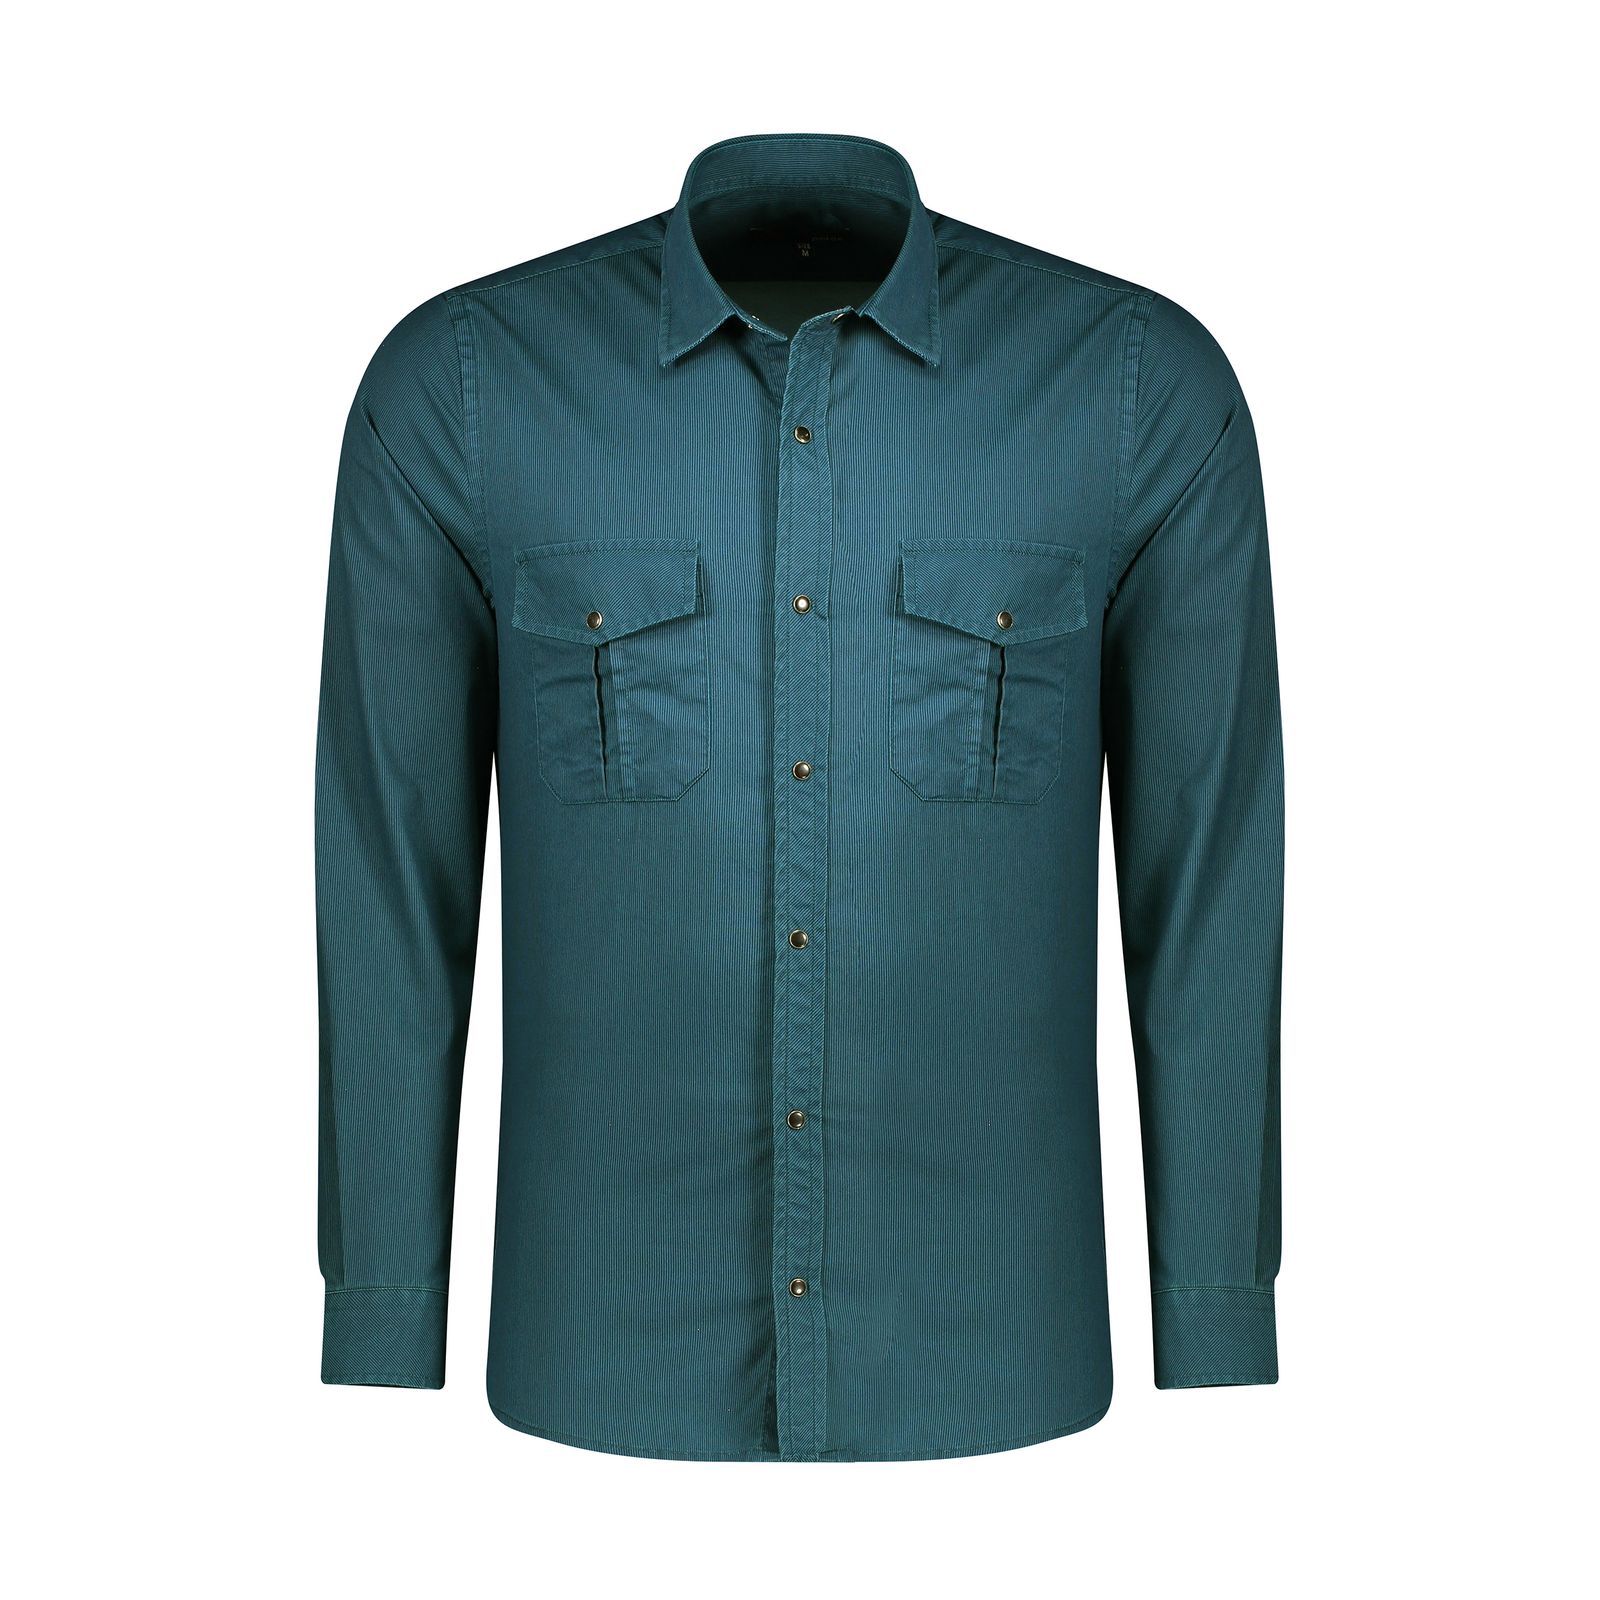 پیراهن آستین بلند مردانه پاتن جامه مدل 102721010222626 رنگ سبز آبی  -  - 1